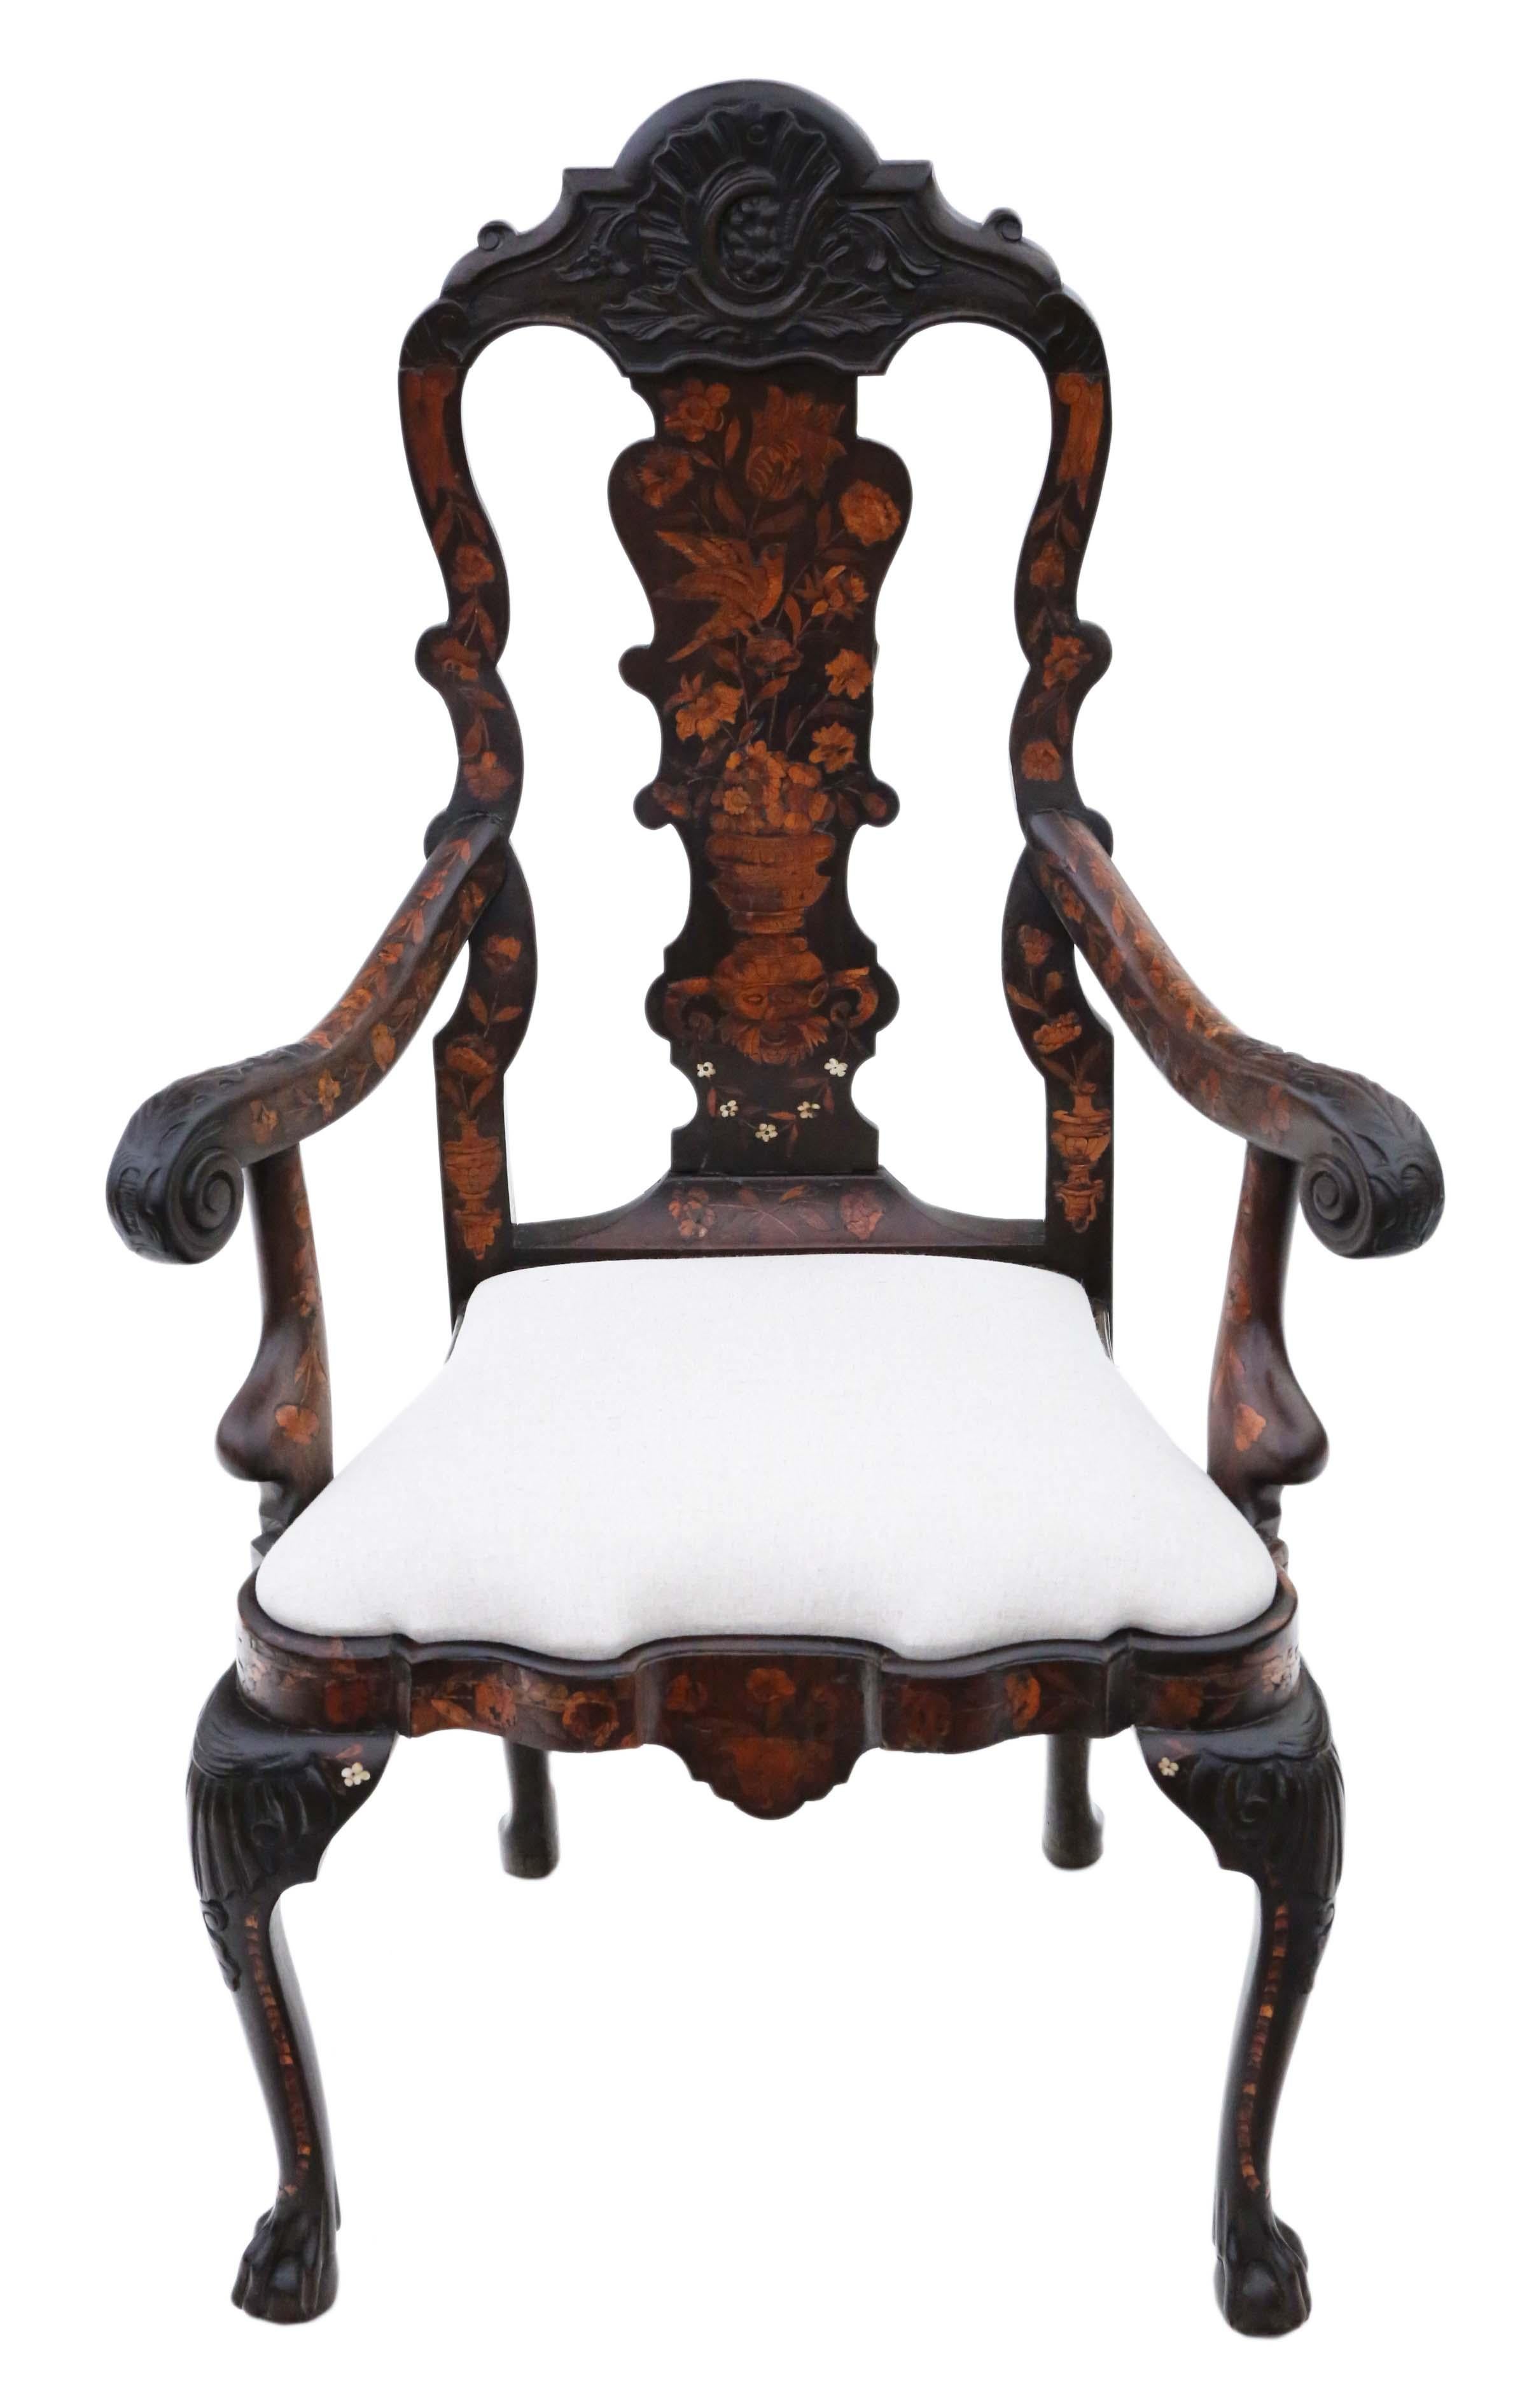 Erleben Sie die exquisite Handwerkskunst dieses sehr hochwertigen niederländischen Intarsienstuhls aus dem 18. Jahrhundert, der auch als Beistell-, Flur- oder Schnitzerstuhl verwendet werden kann. Dieser Stuhl besticht durch seine außergewöhnlichen